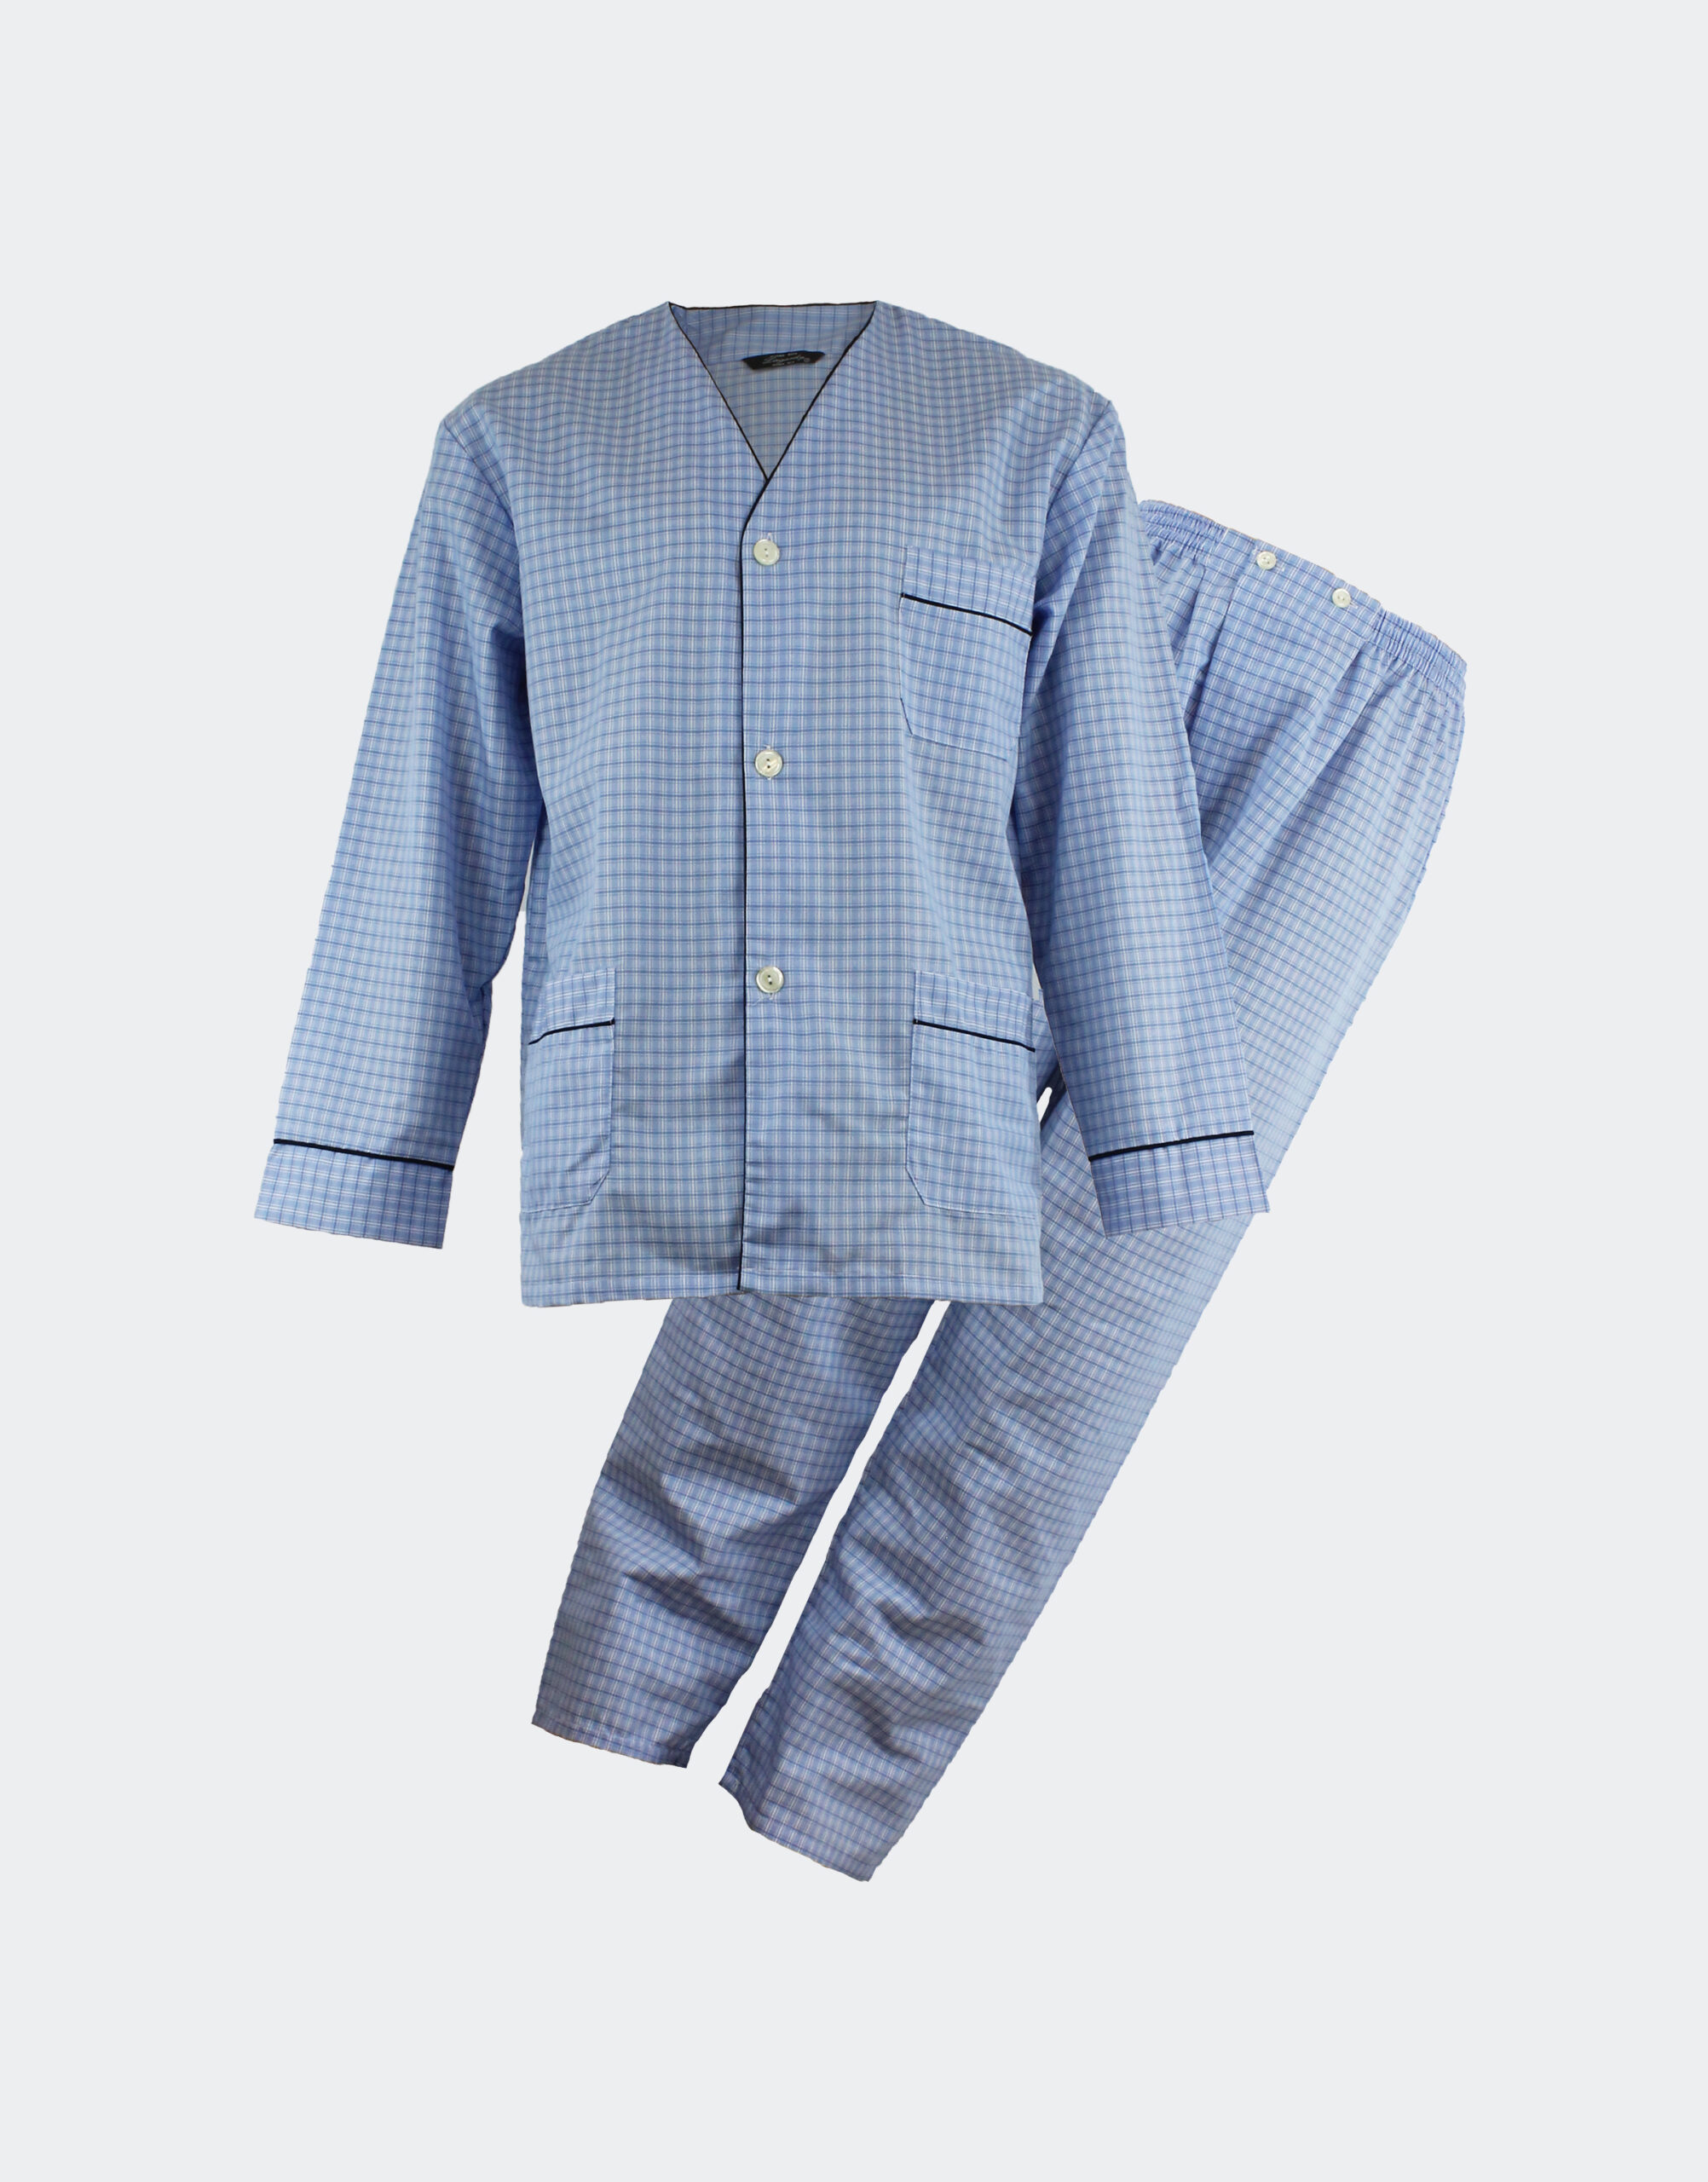 Pijama hombre tela sin cuello en cuadritos azules - Casa Indalesi